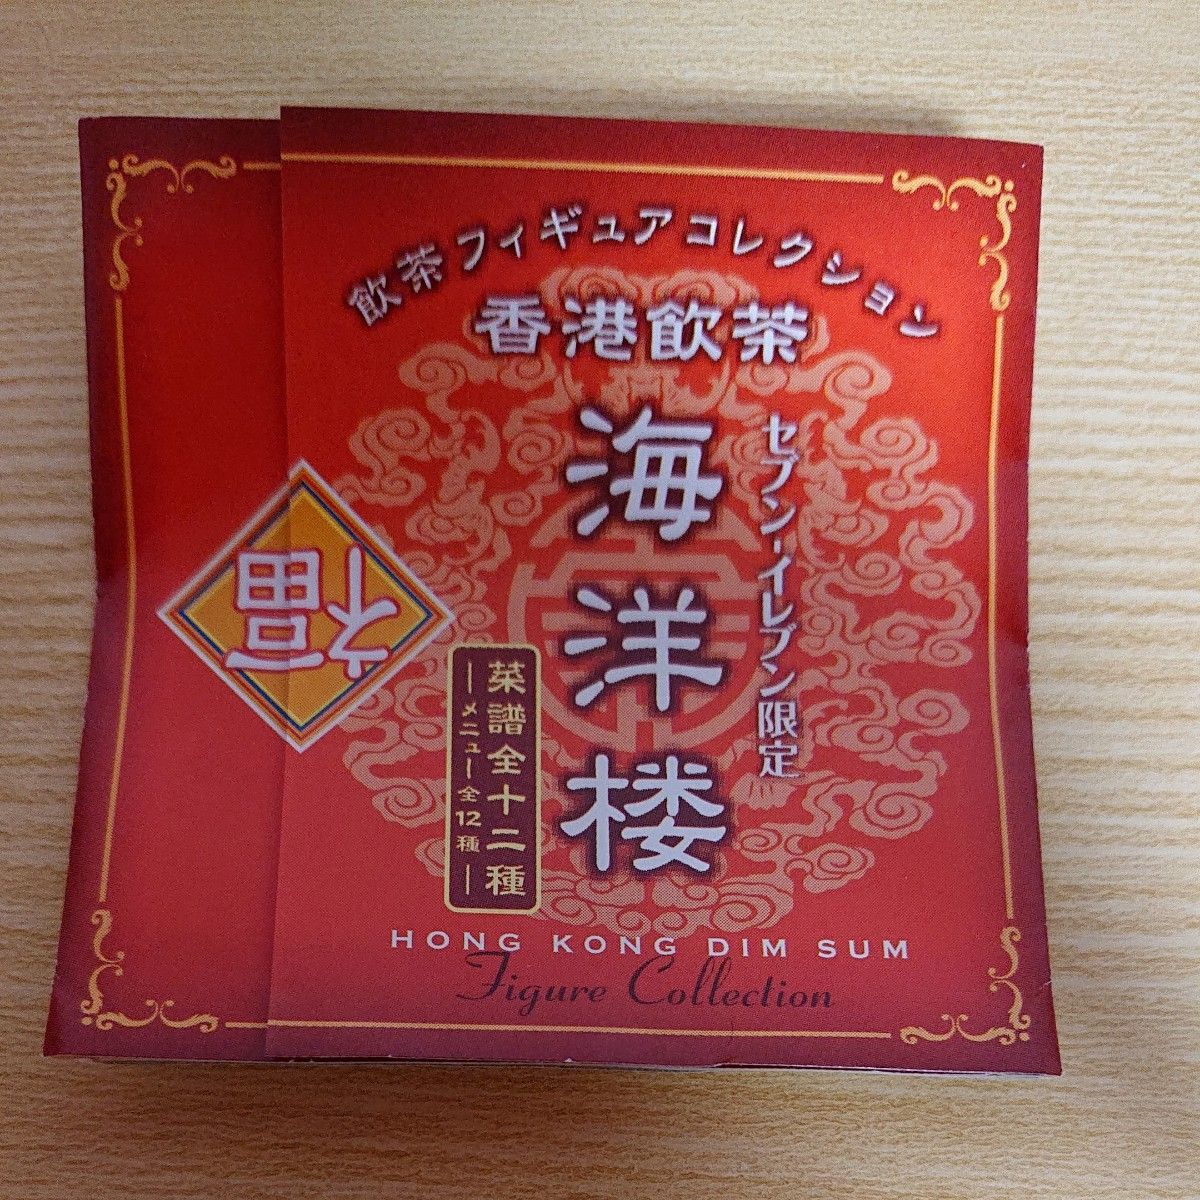 飲茶フィギュアコレクション  香港飲茶  海洋楼  金魚餃子と中国粥